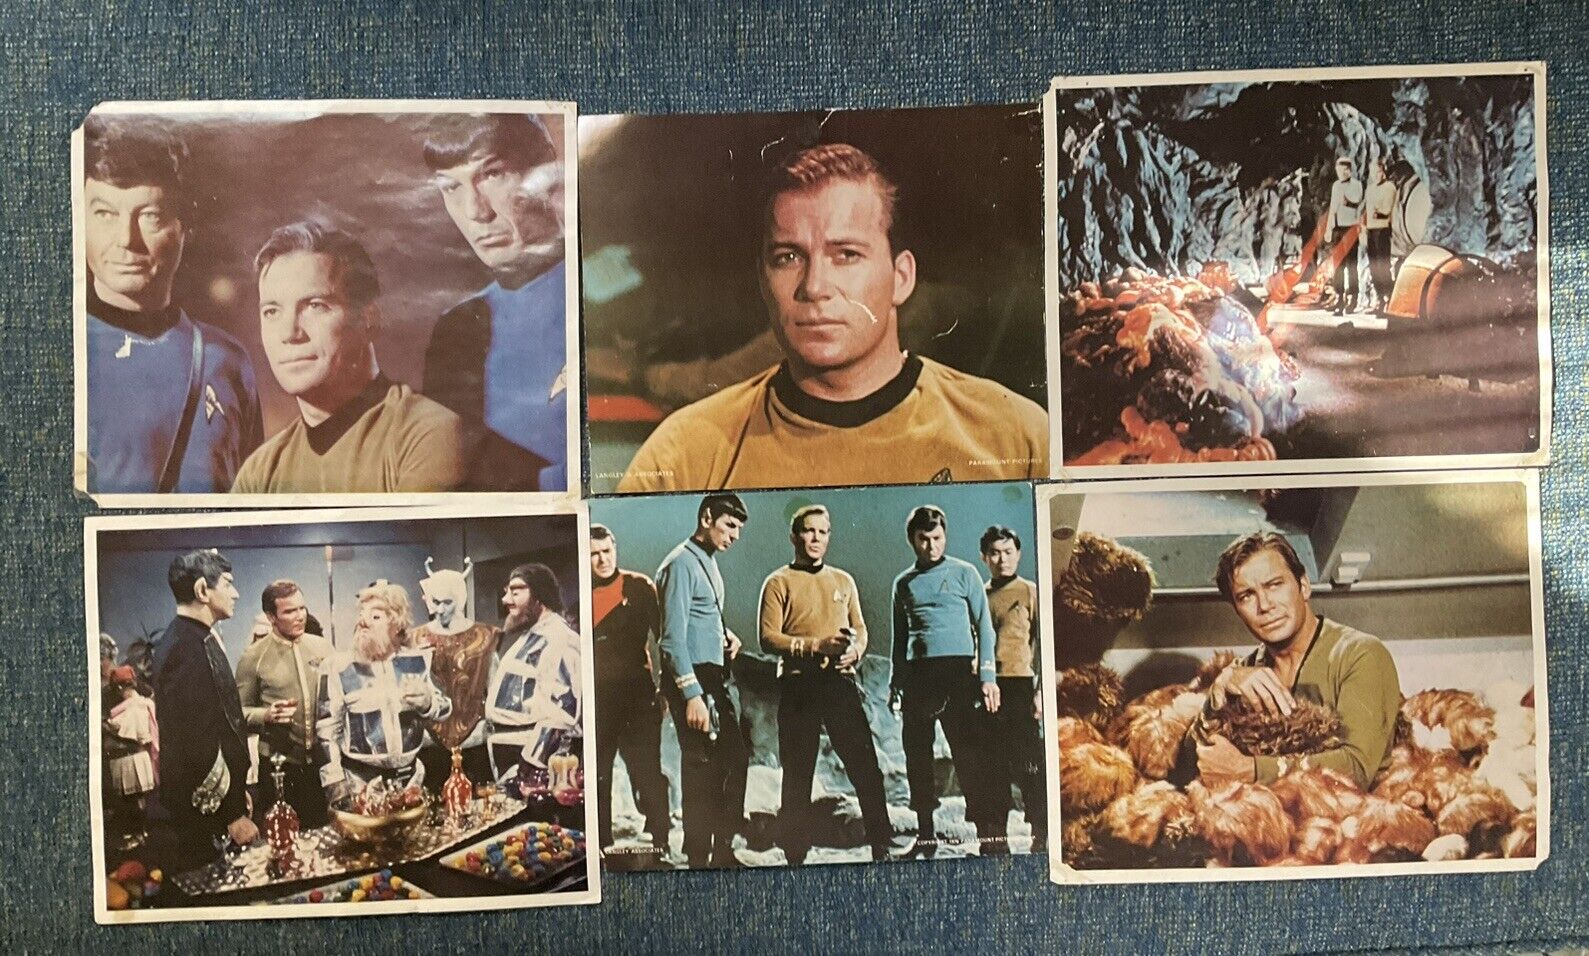 1976 Star Trek Langley & Associate Stills/Photos Star Trek fan club promo lot